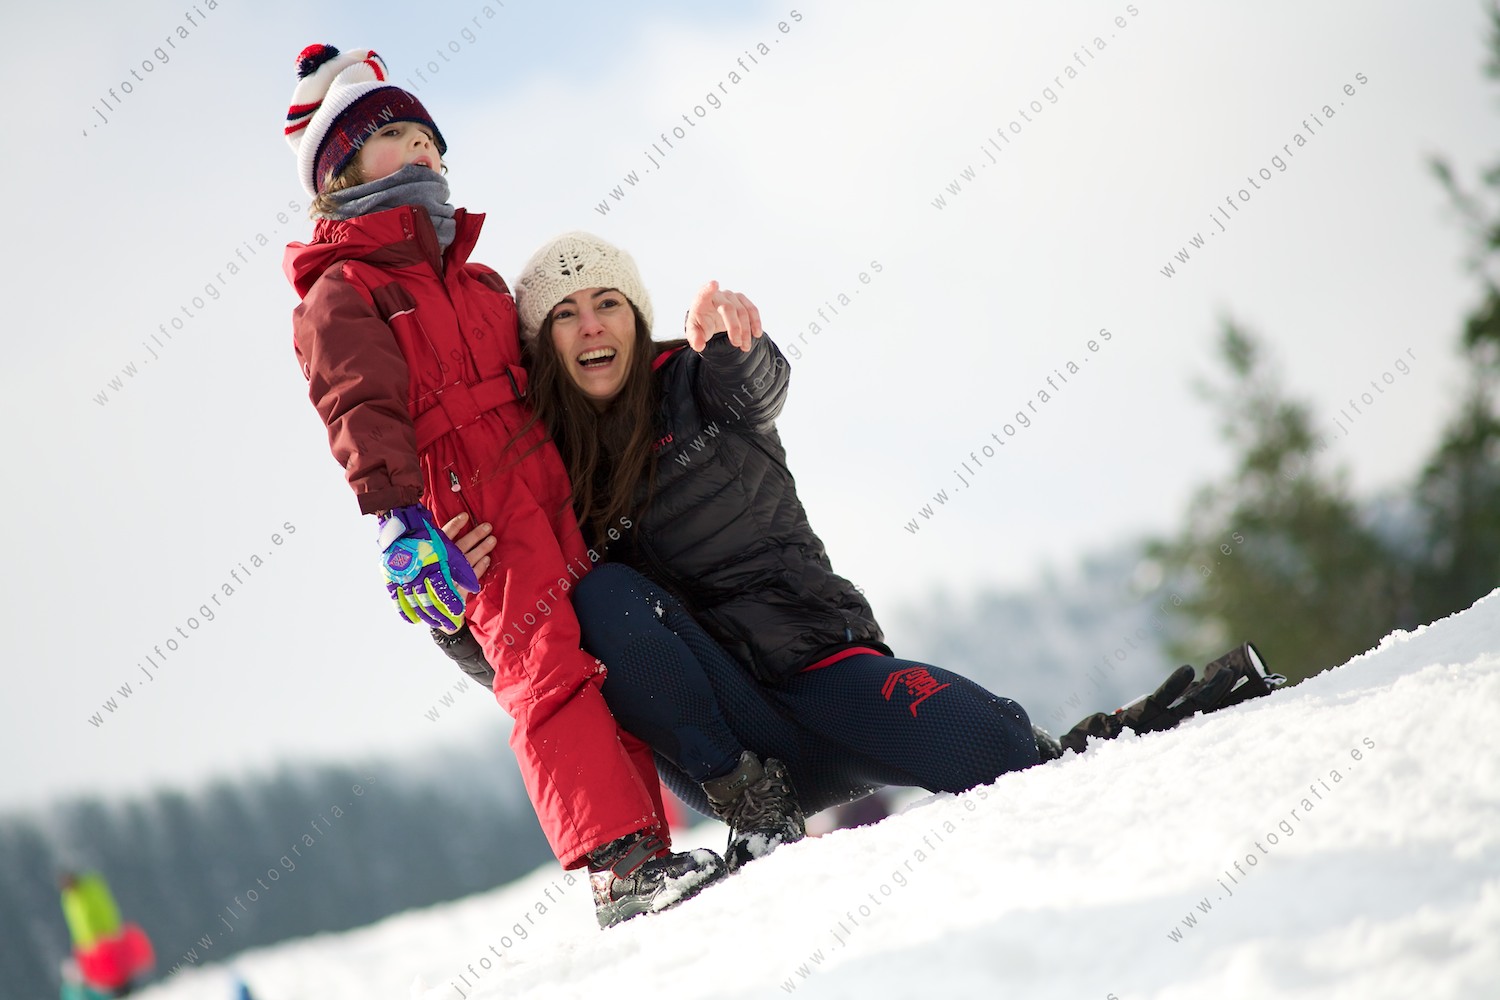 Madre con su hijo disfrutando en la nieve, señalando algo